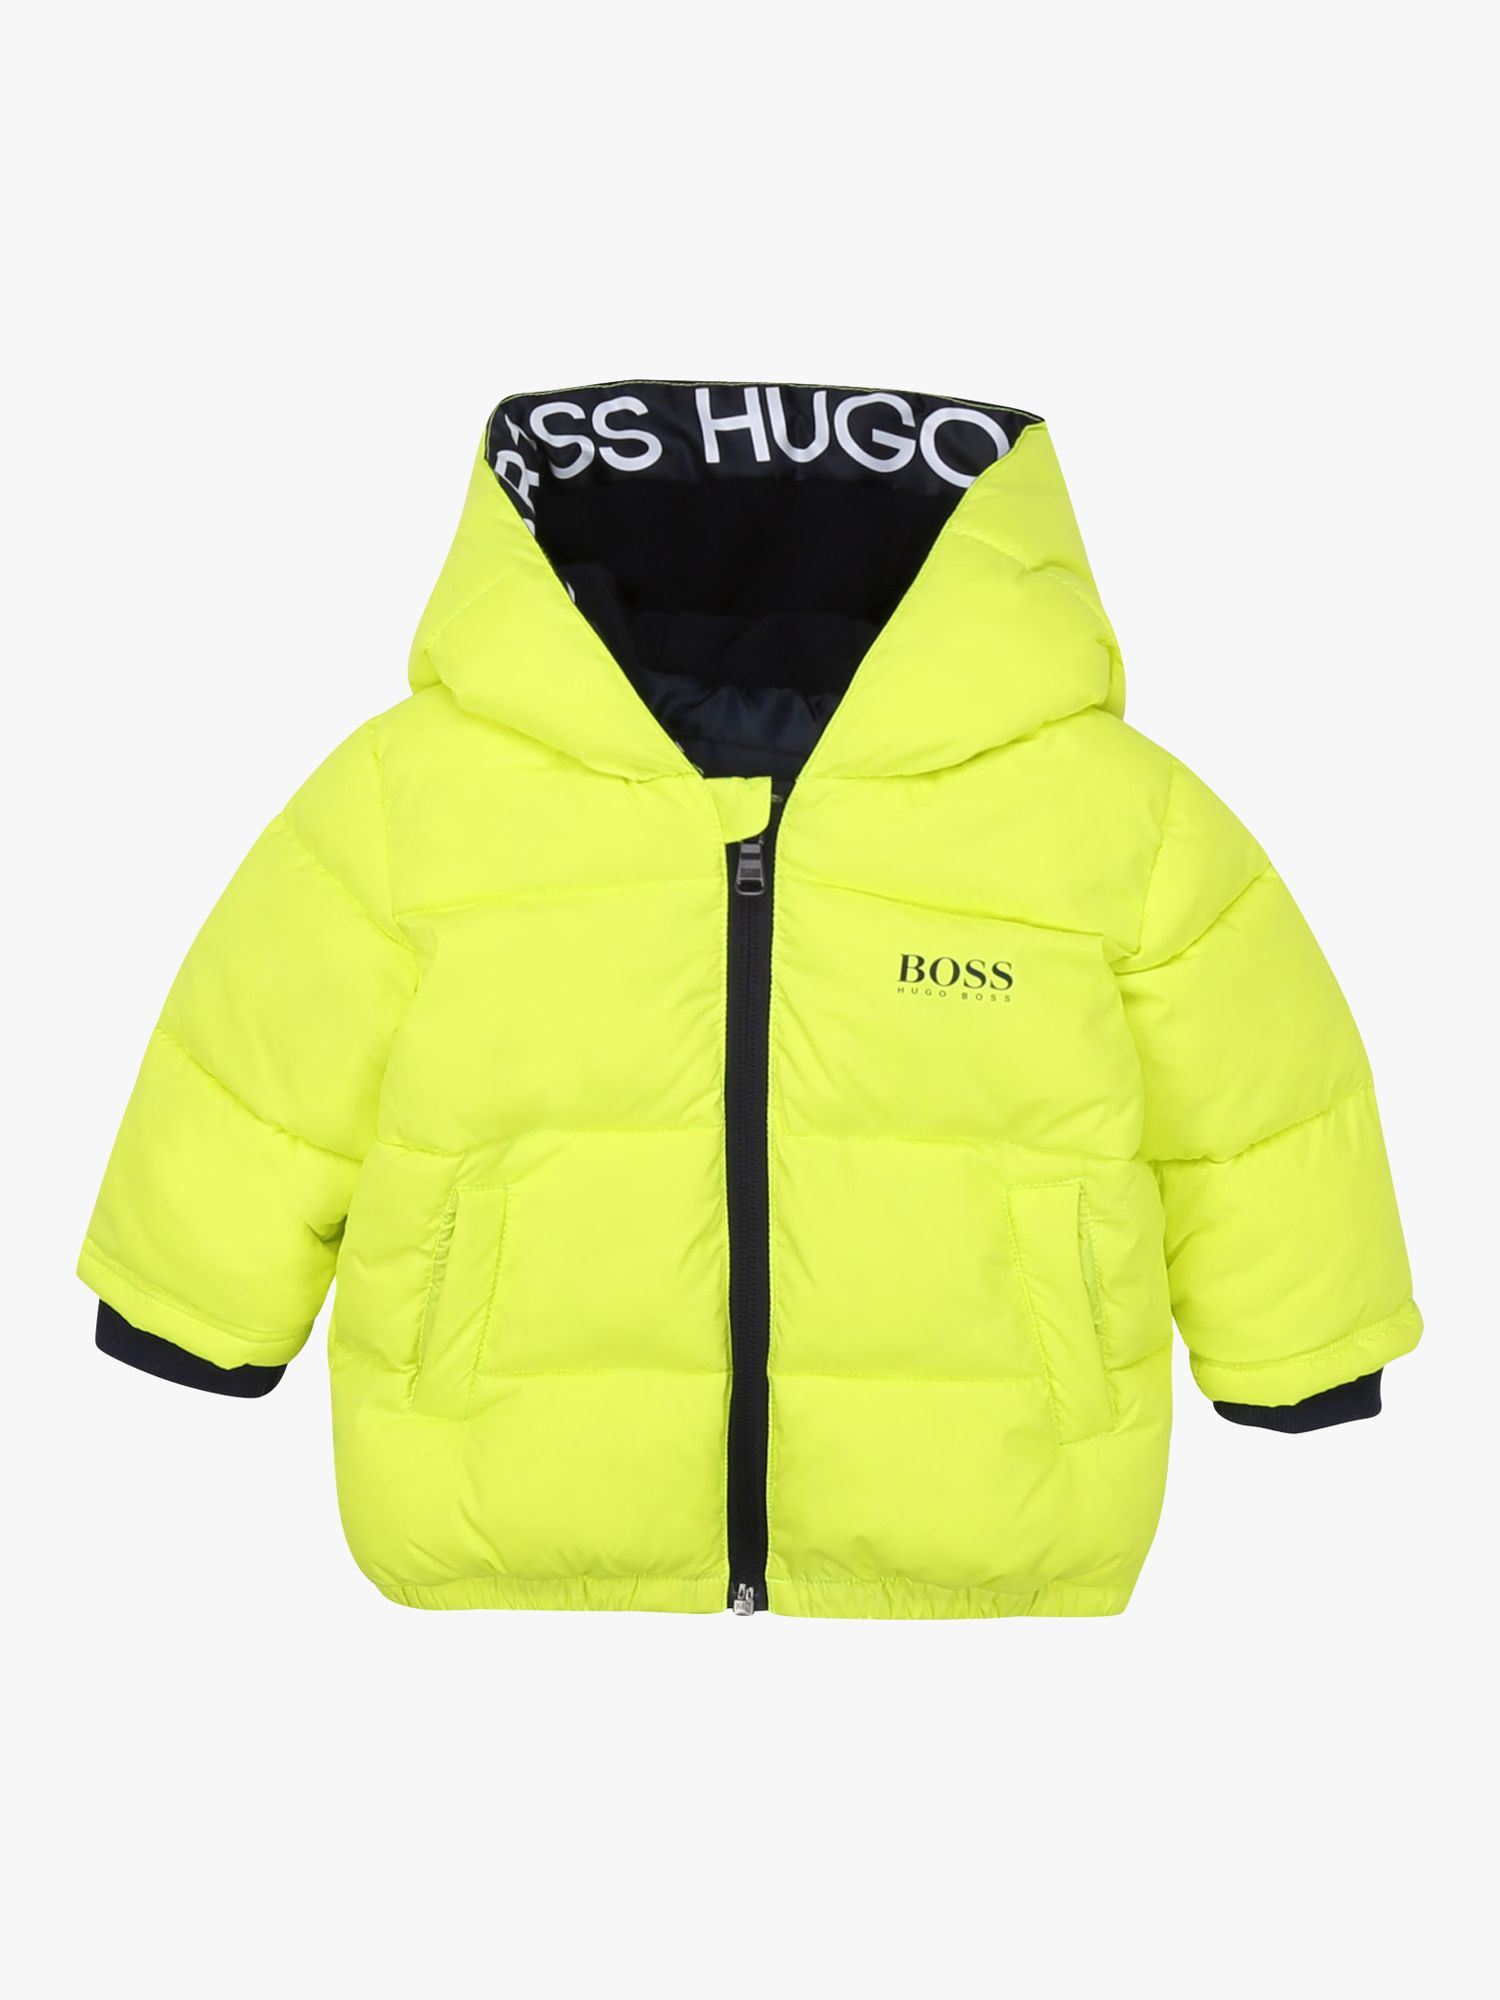 hugo boss baby jacket